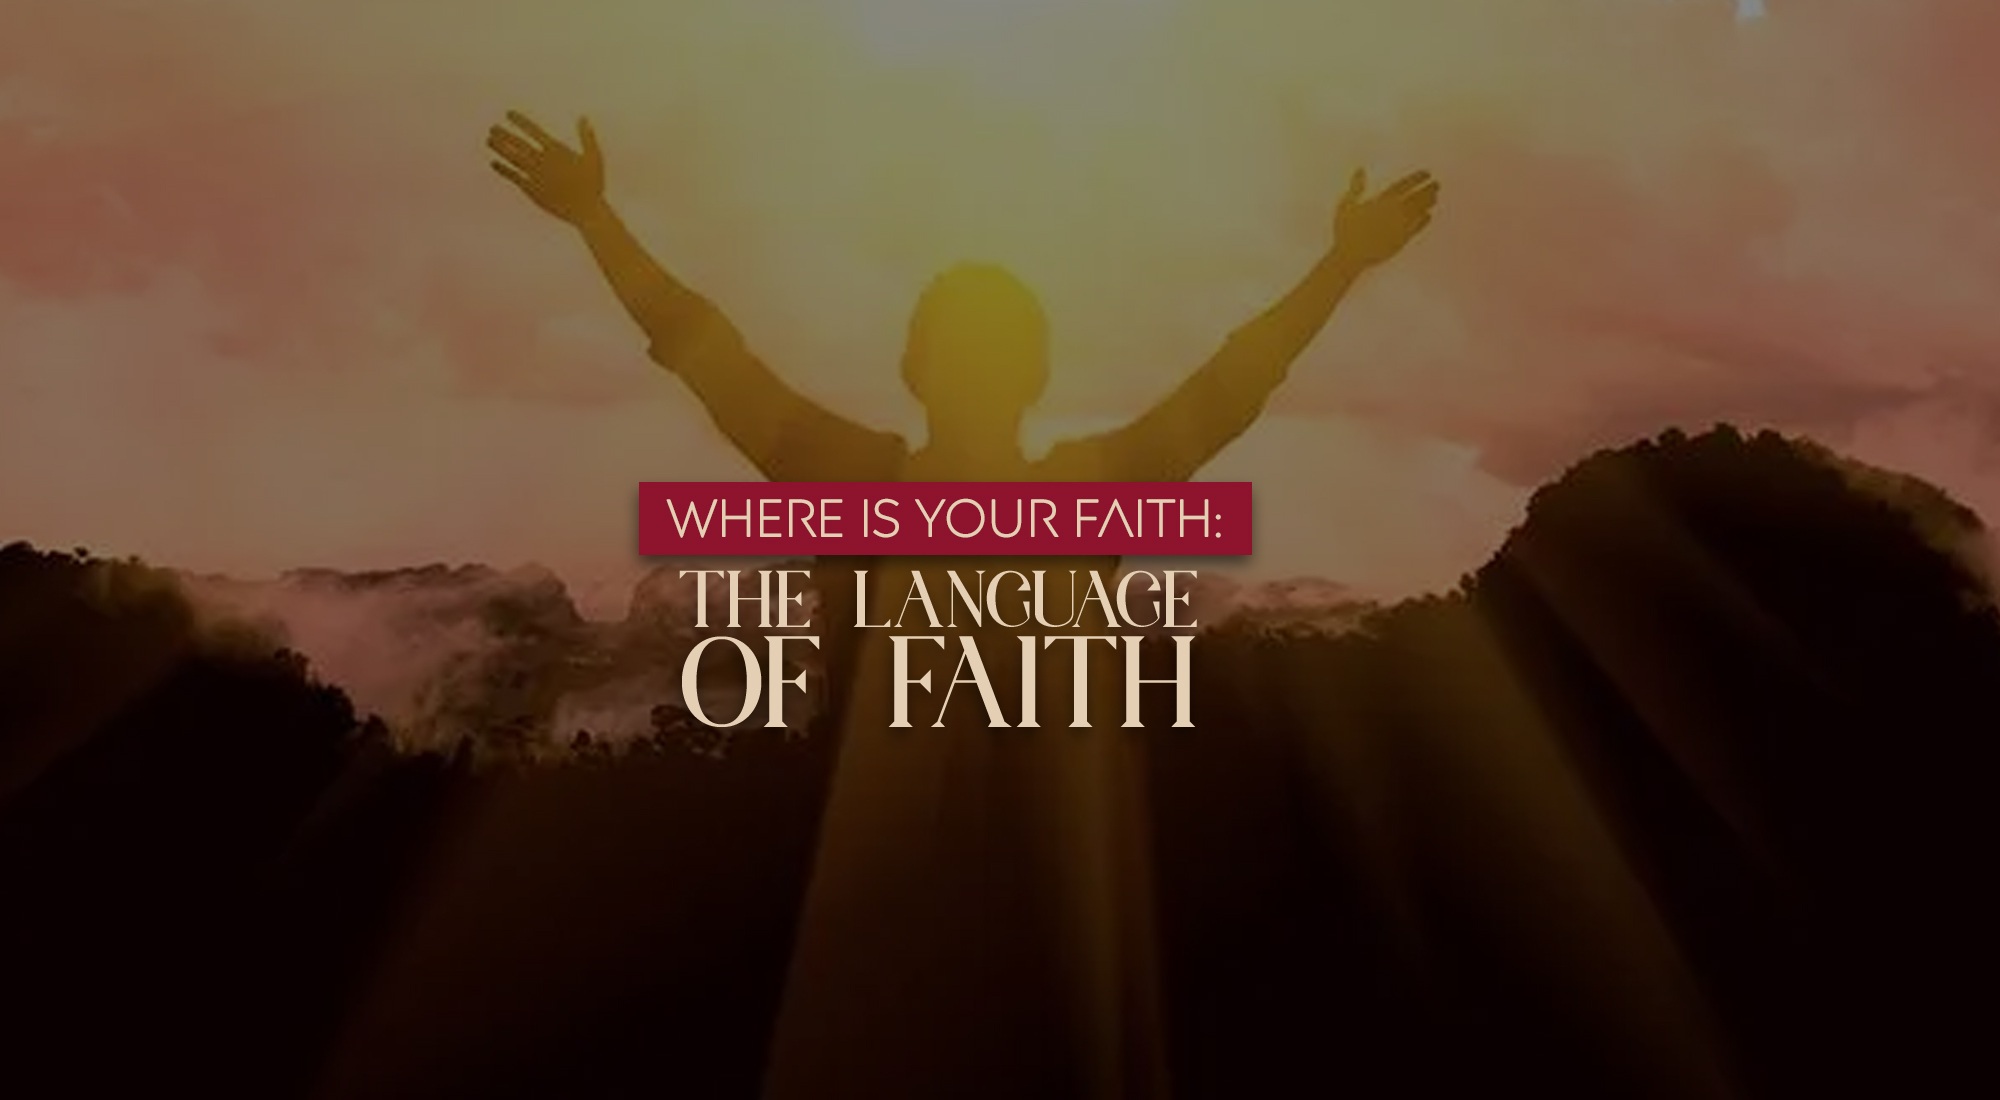 WHERE IS YOUR FAITH